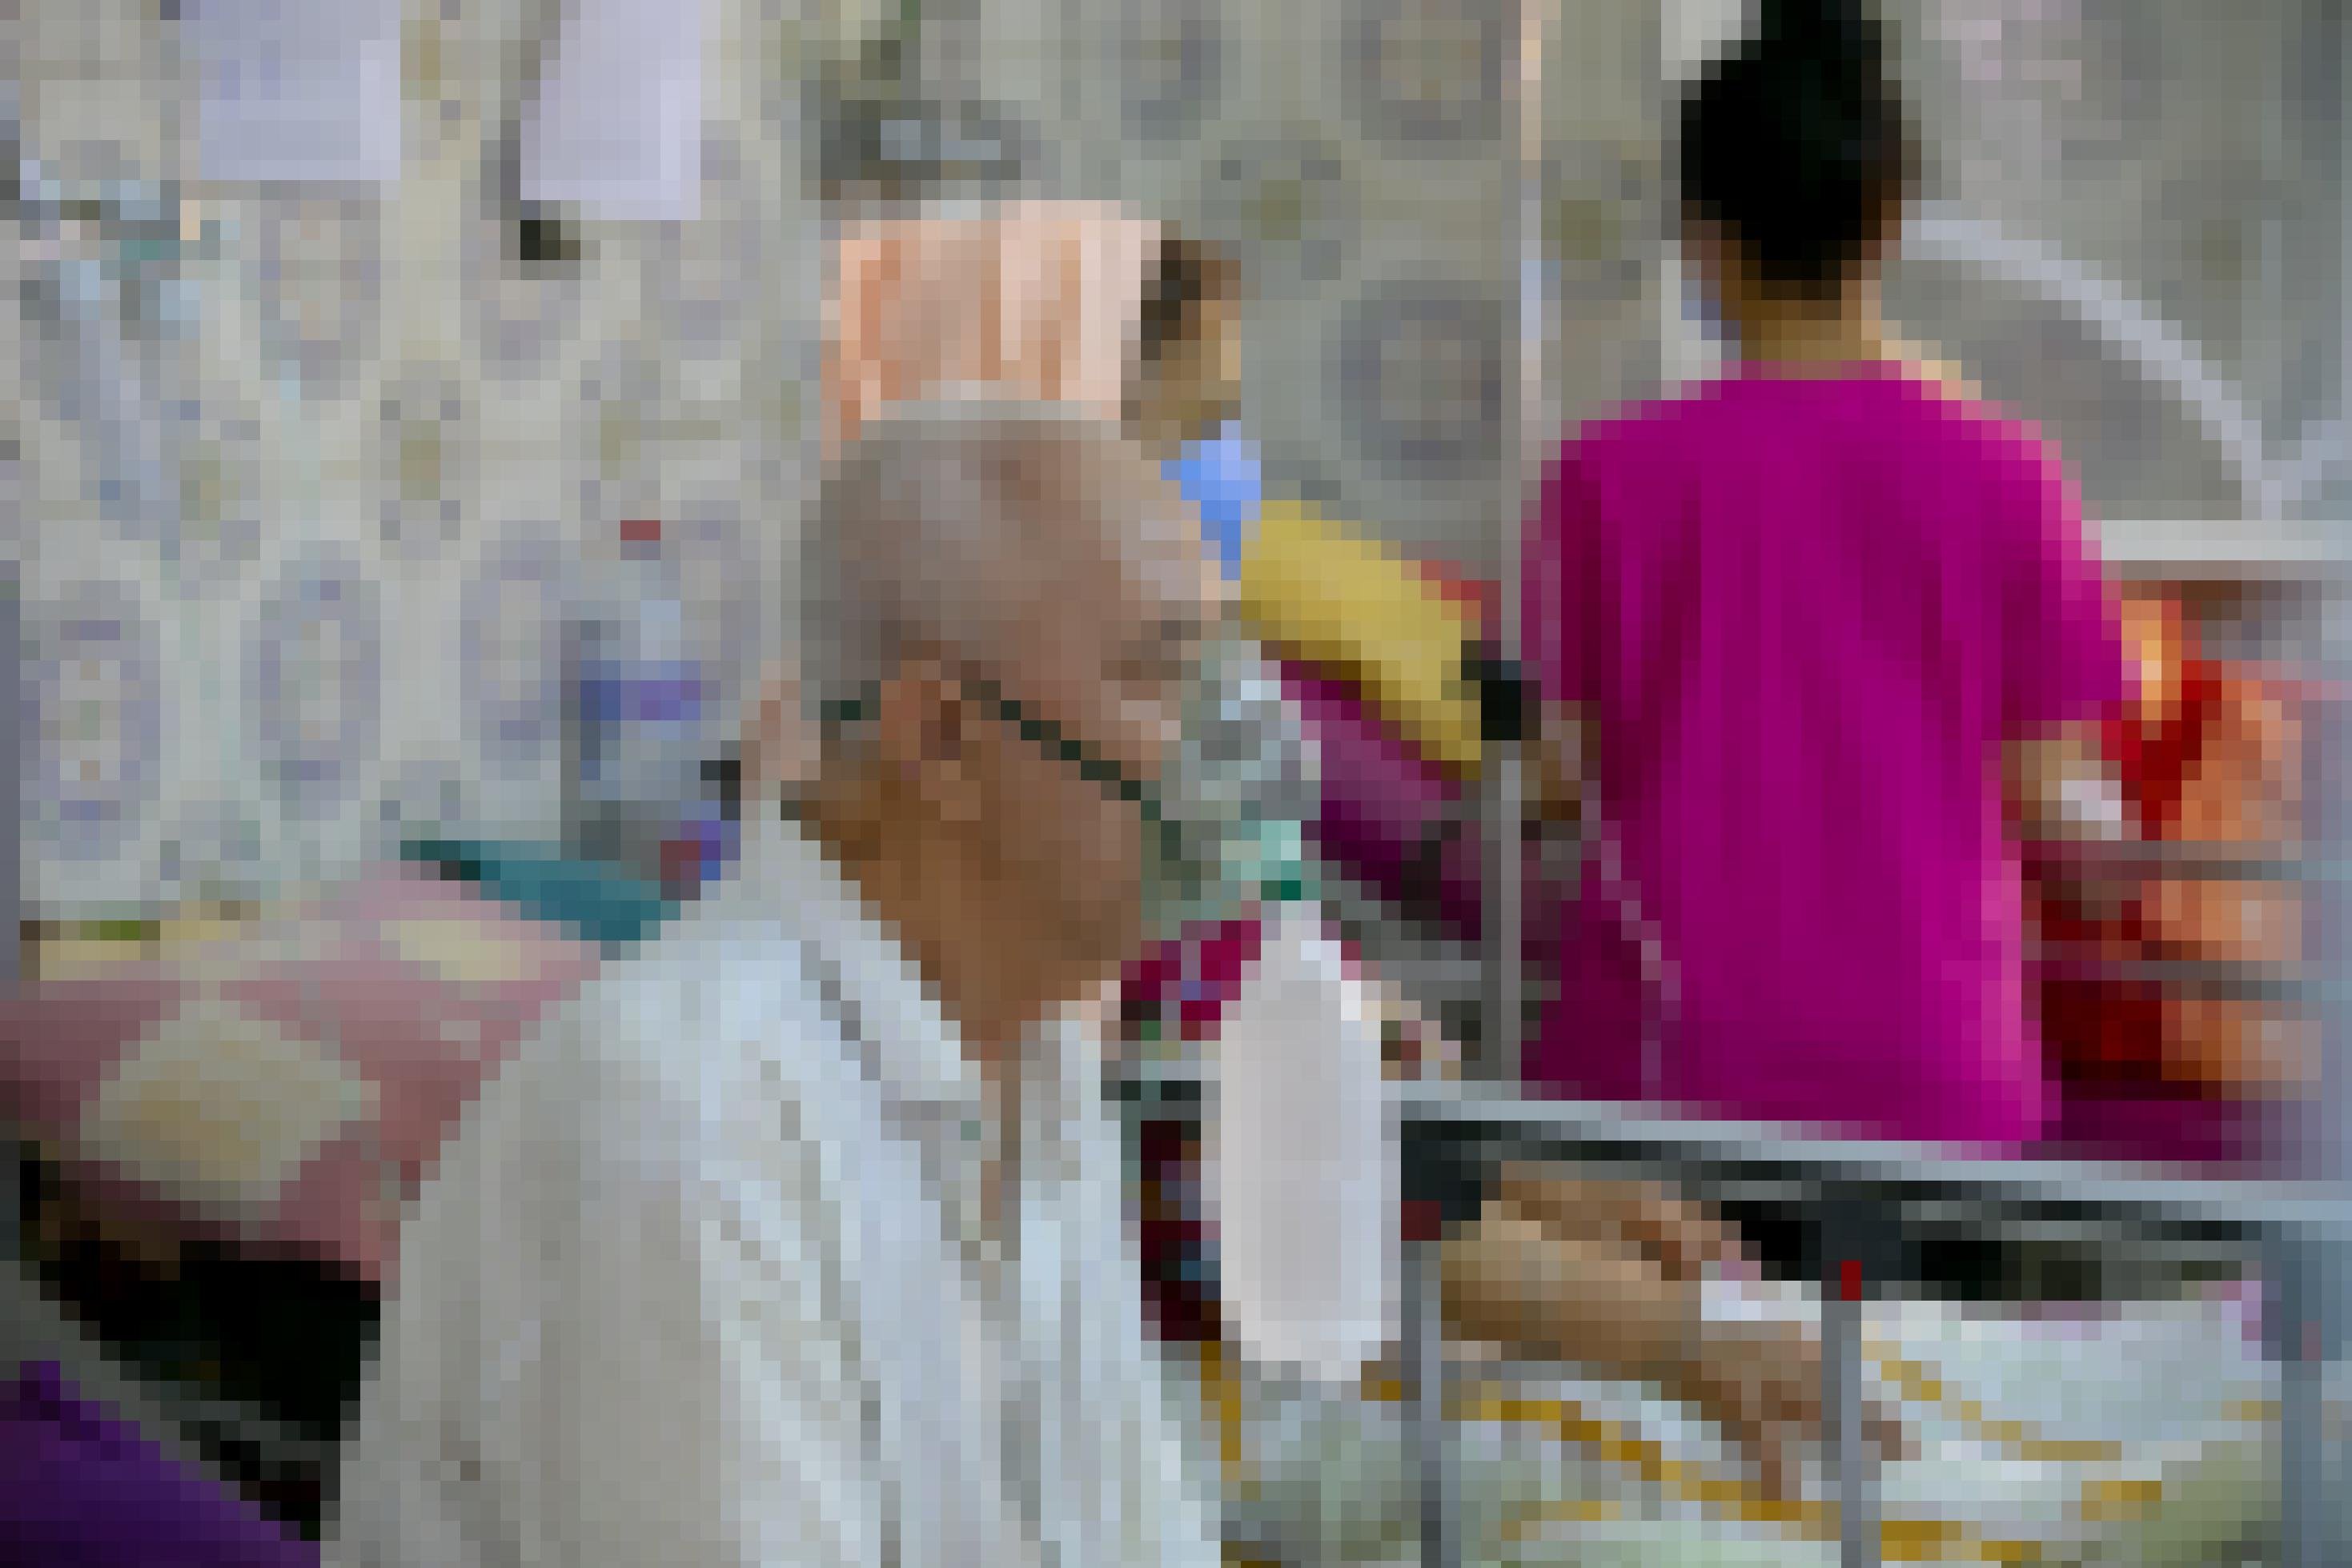 Ein älterer Mann, der mit Sauerstoff versorgt wird, sitzt in einem Krankenhausbett. Im Hintergrund sind weitere Personen zu erahnen.